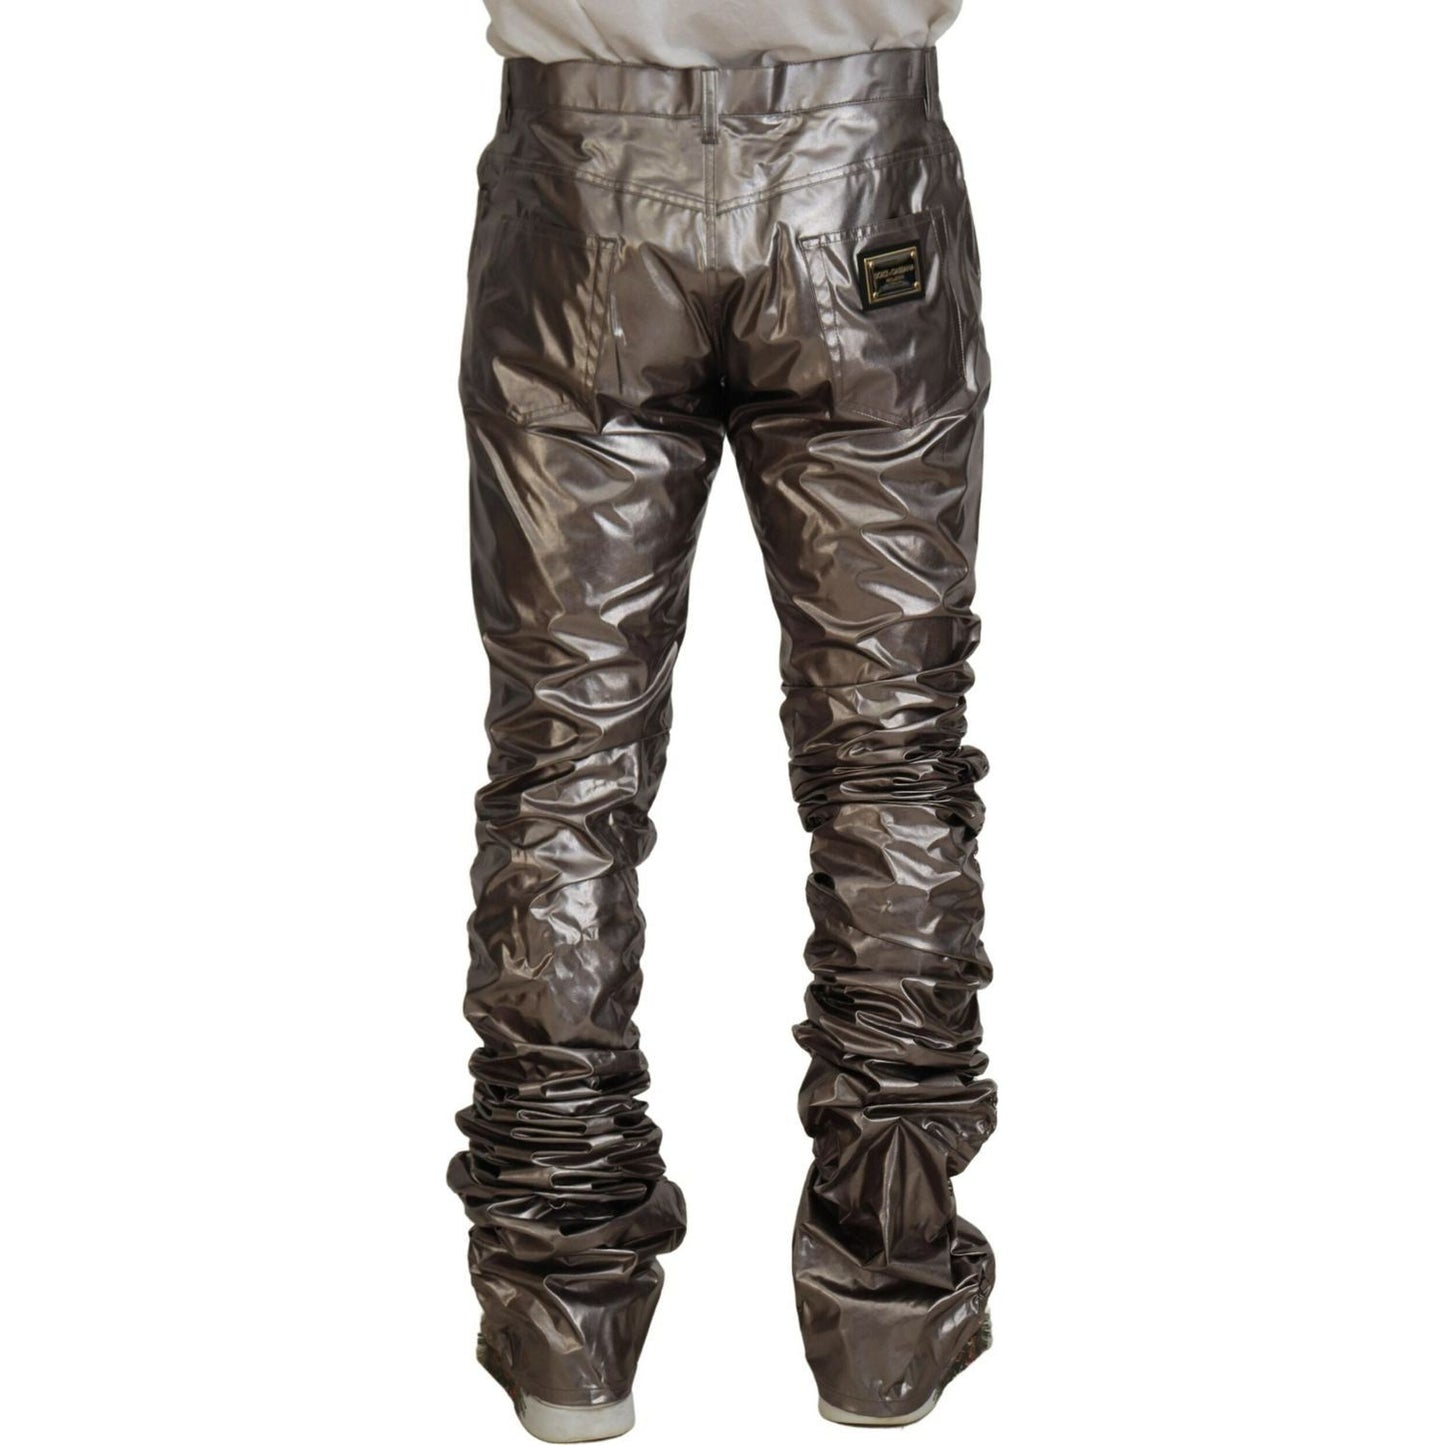 Dolce & Gabbana Metallic Silver Casual Pants silver-metallic-nylon-stretch-pants